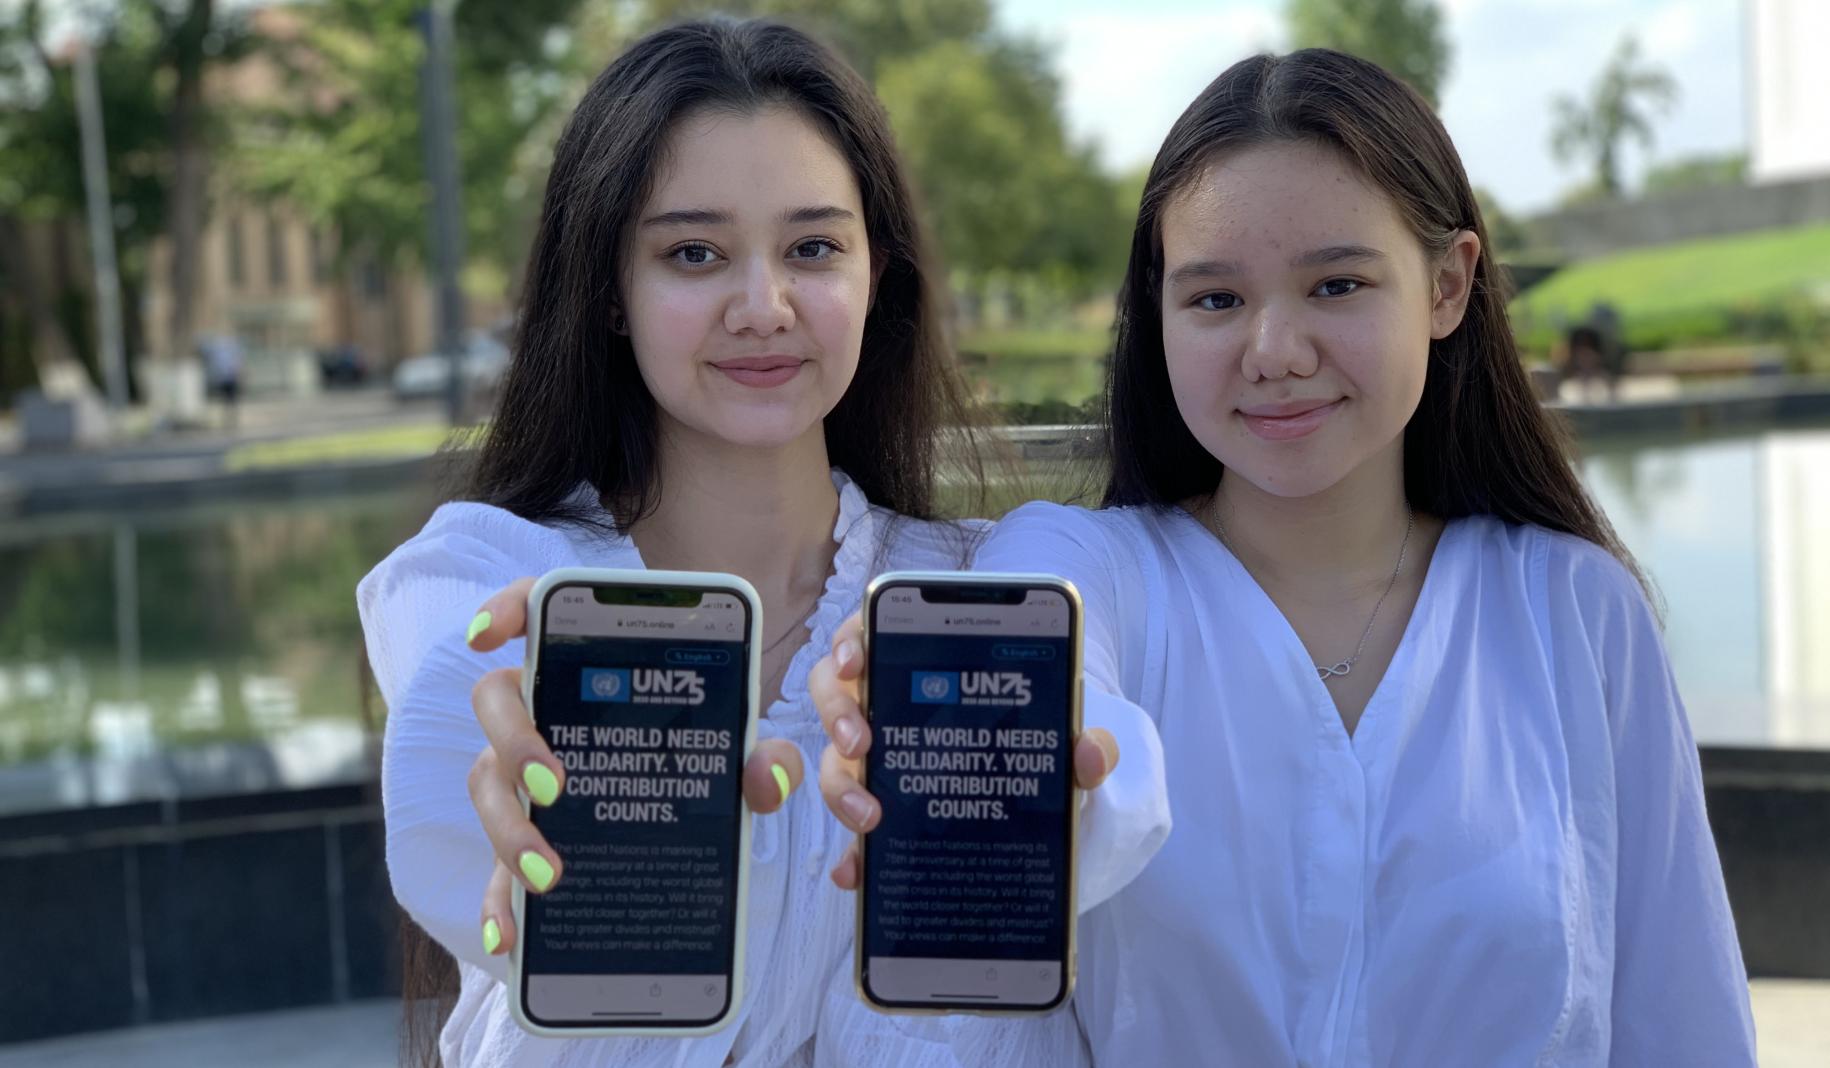 فتاتان مراهقتان تحملان هاتفيهما المحمولين مباشرة نحو الكاميرا أثناء عرض استطلاع UN75 على الشاشة.